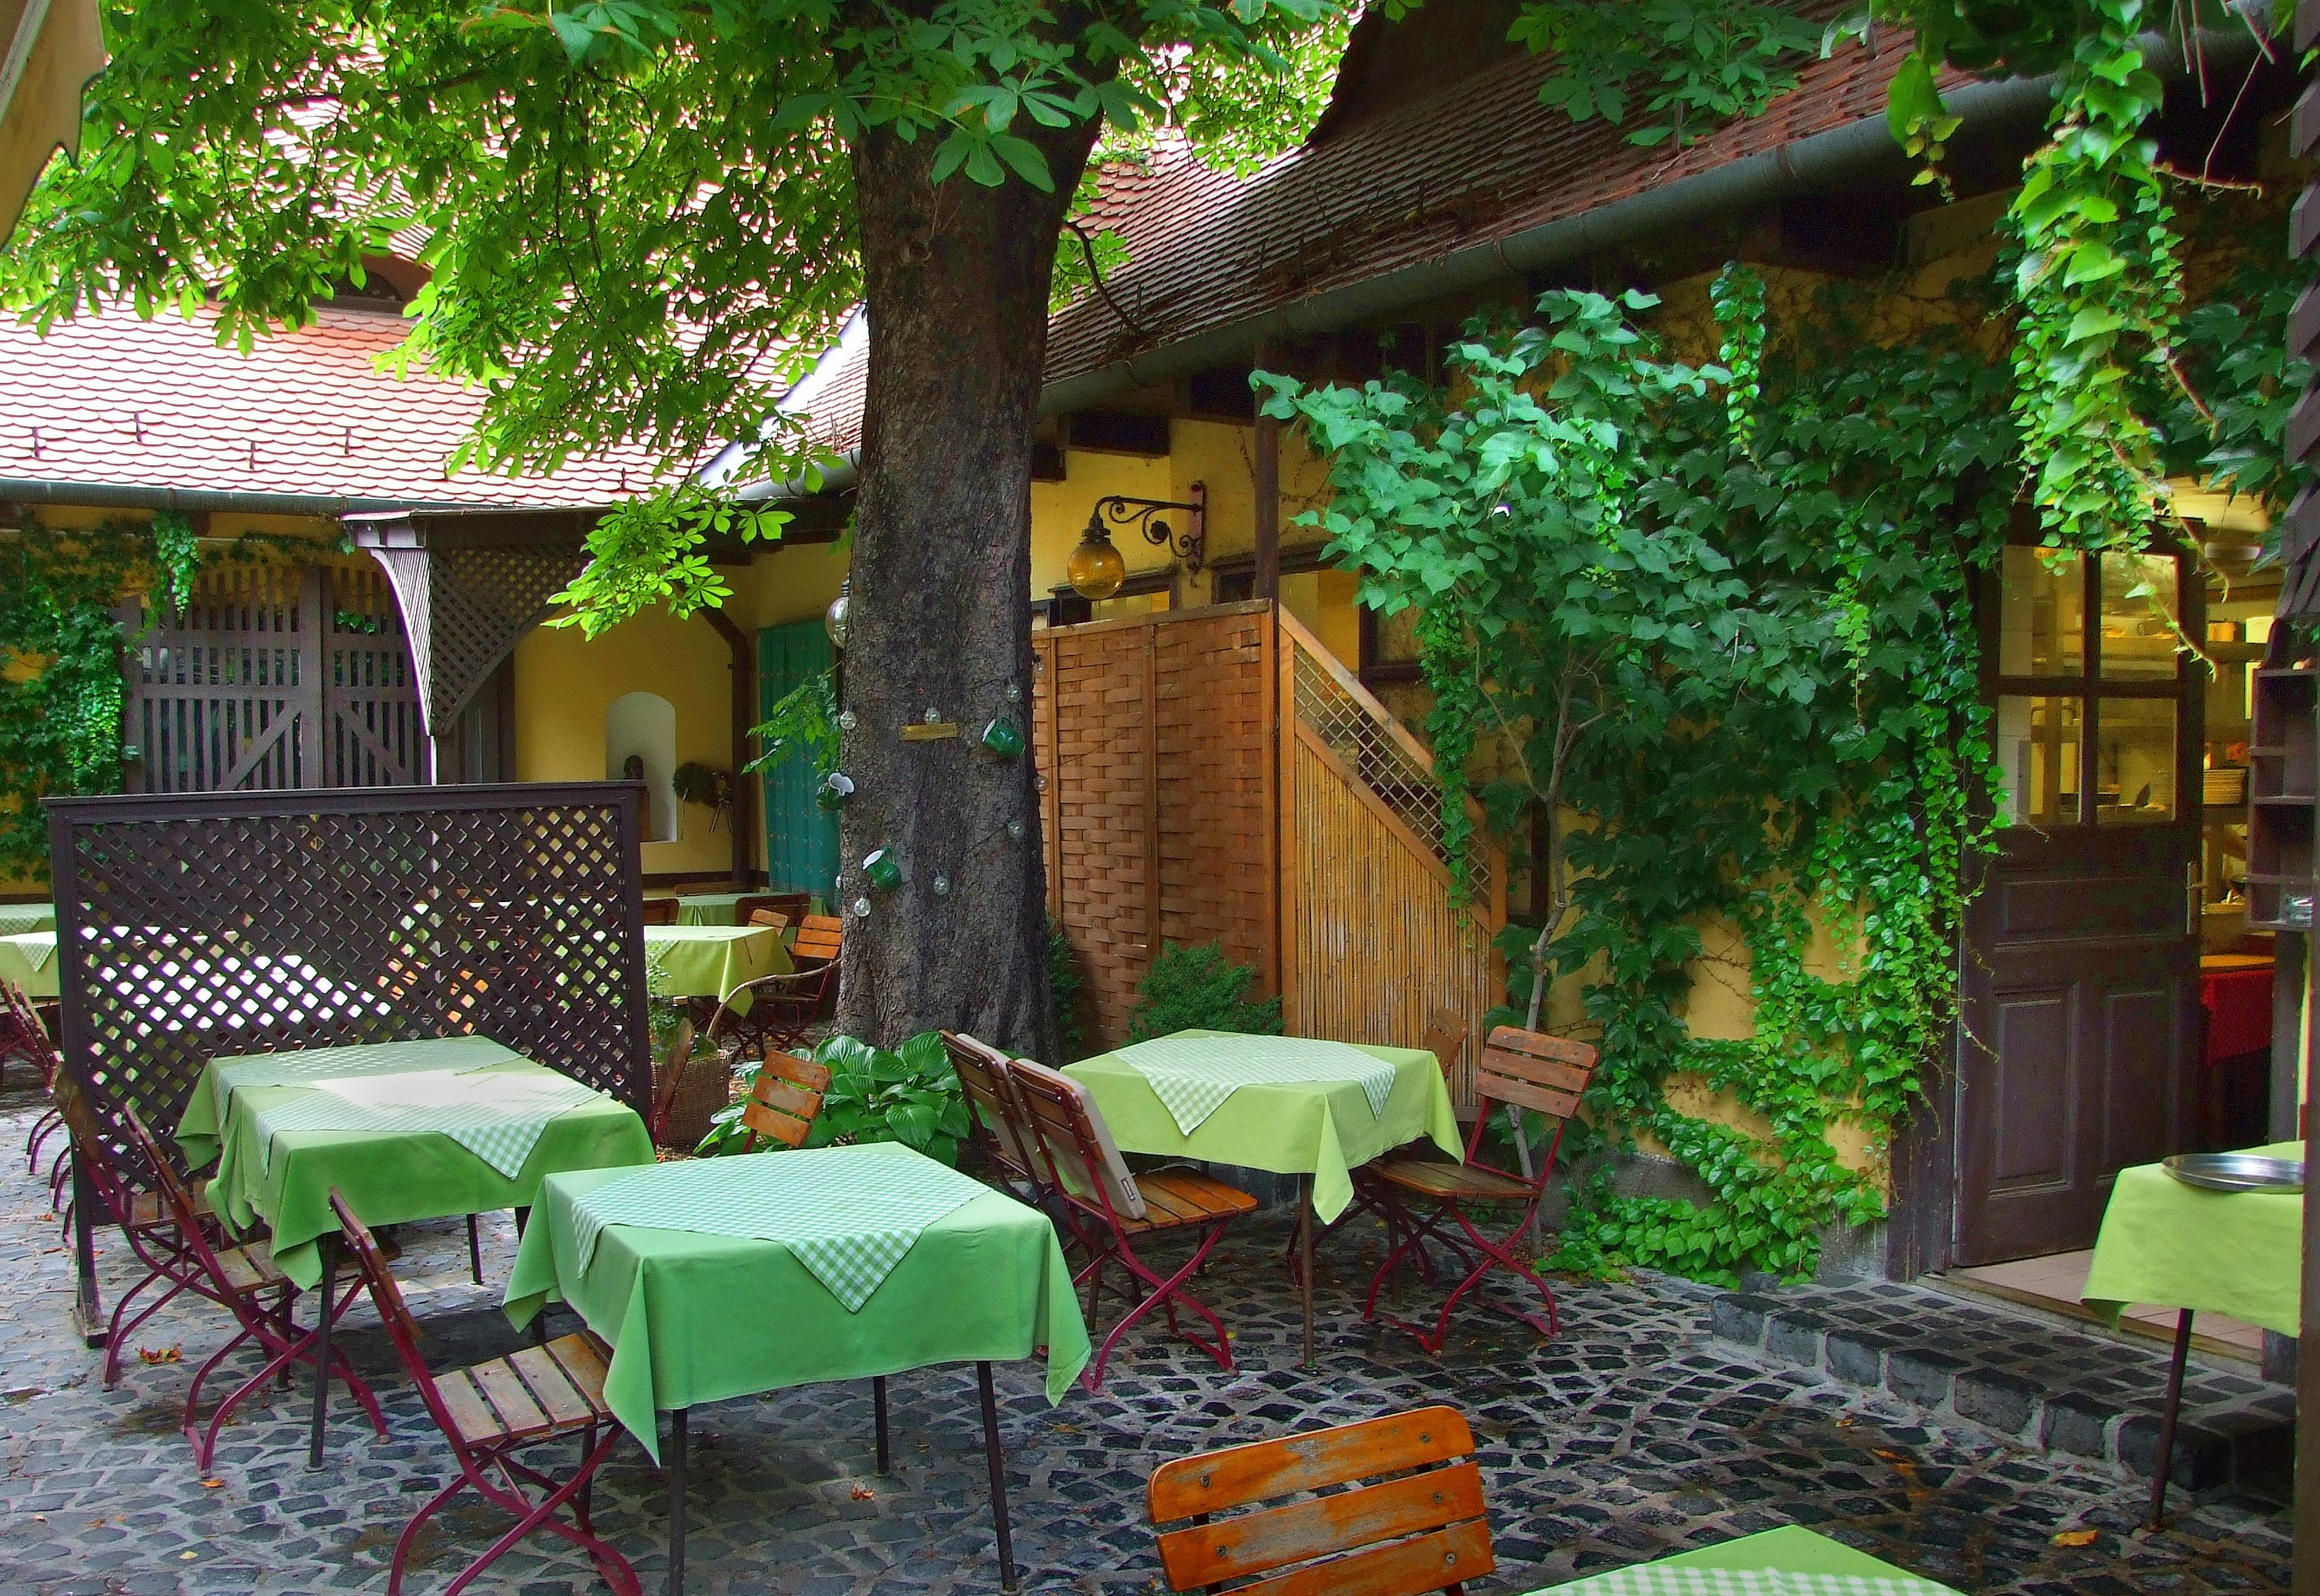 Kéhli étterem, Budapest, legendás éttermek